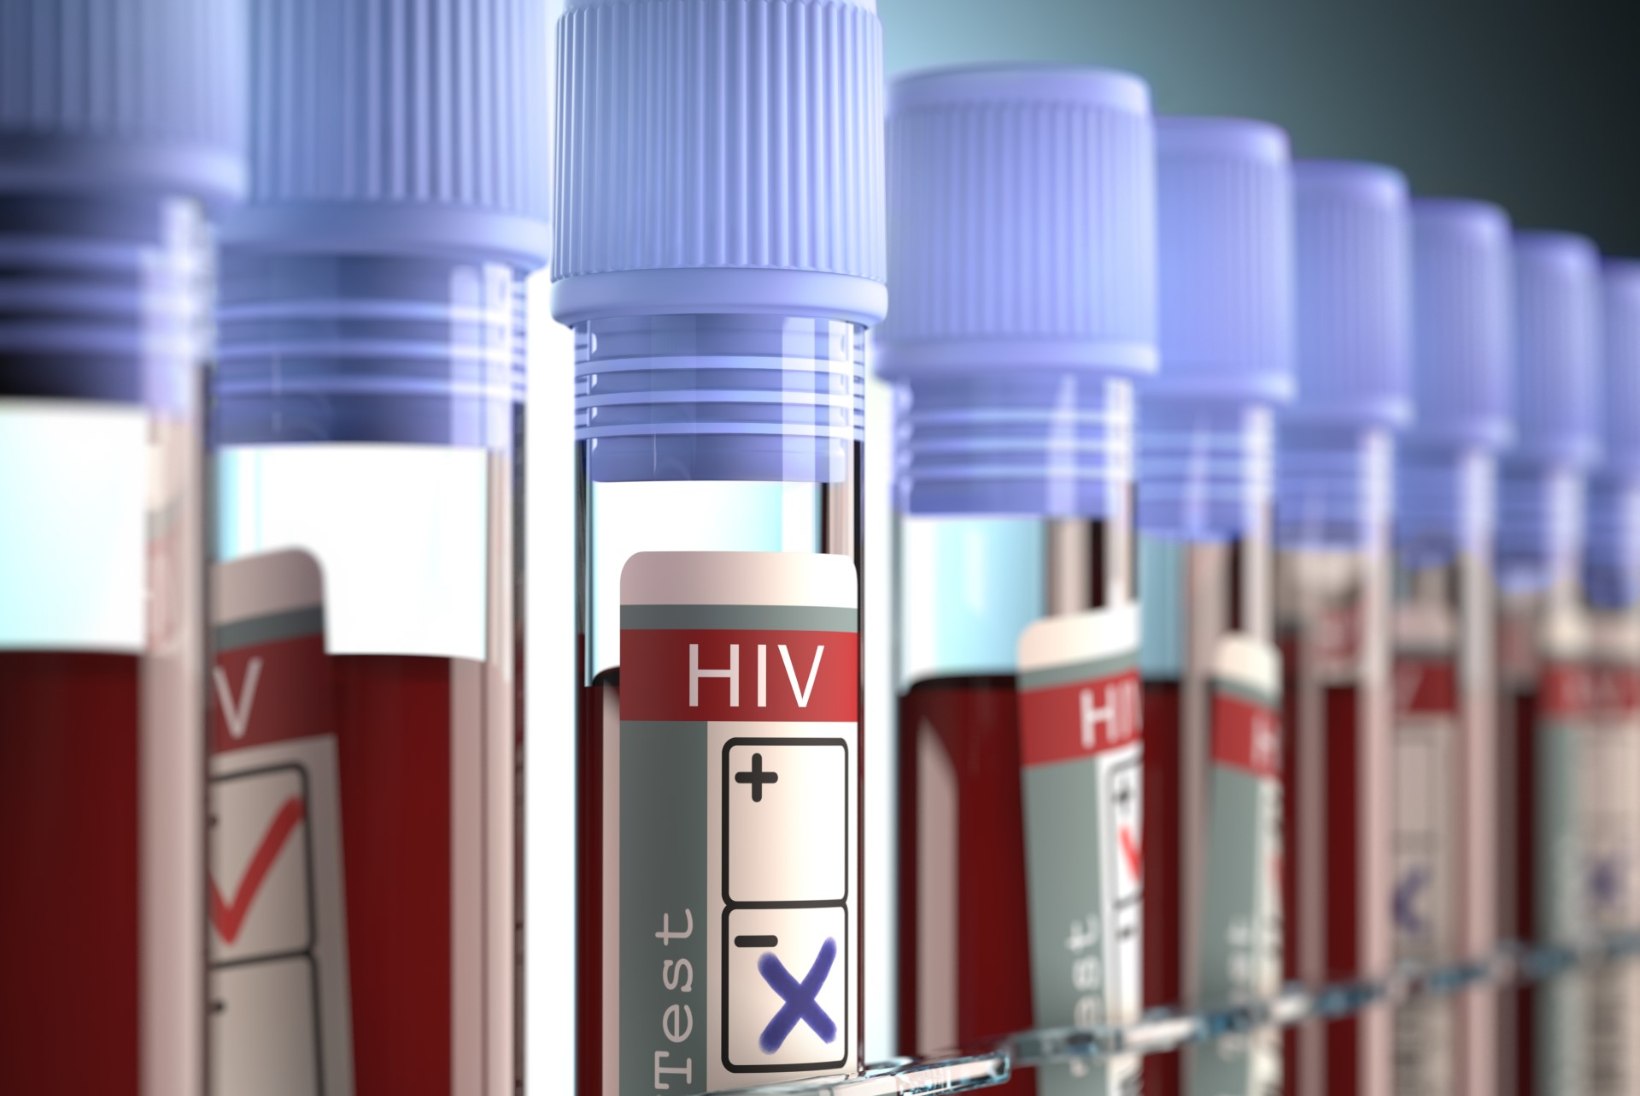 Uuring: Eesti elanikud ei tea, et HIVi nakatutakse aina enam sugulisel teel